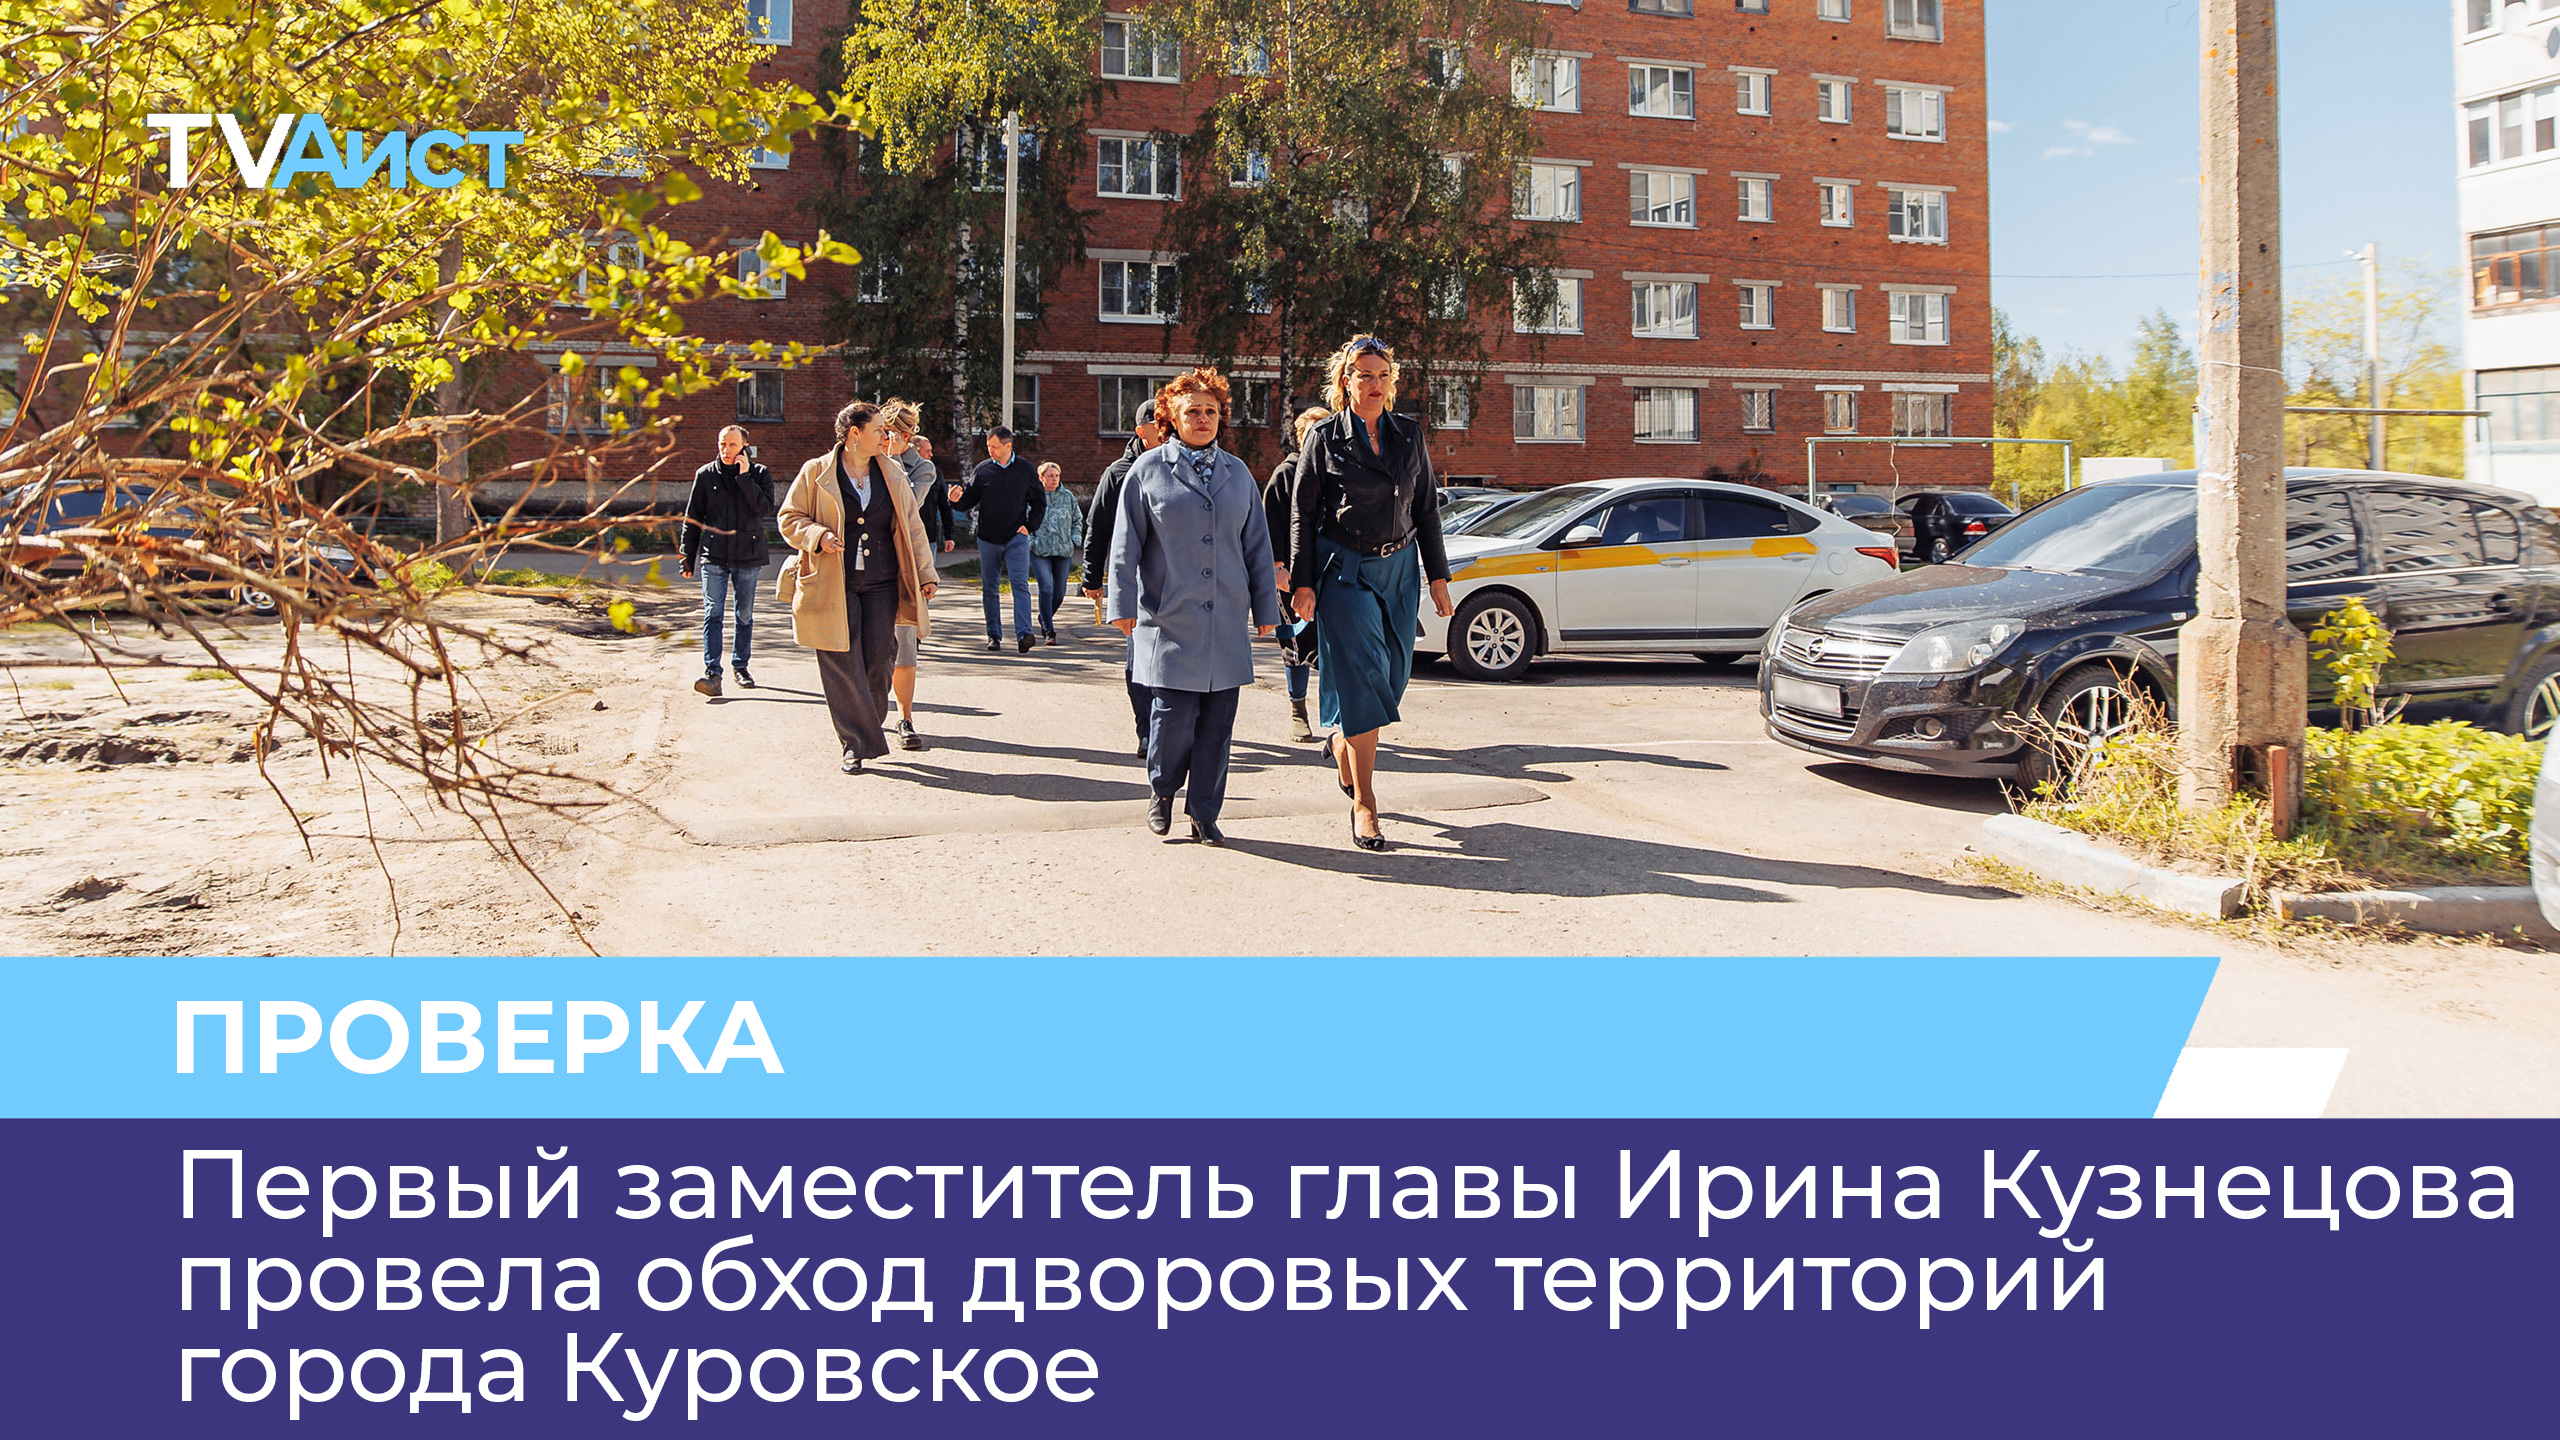 Первый заместитель главы Ирина Кузнецова провела обход дворовых территорий города Куровское